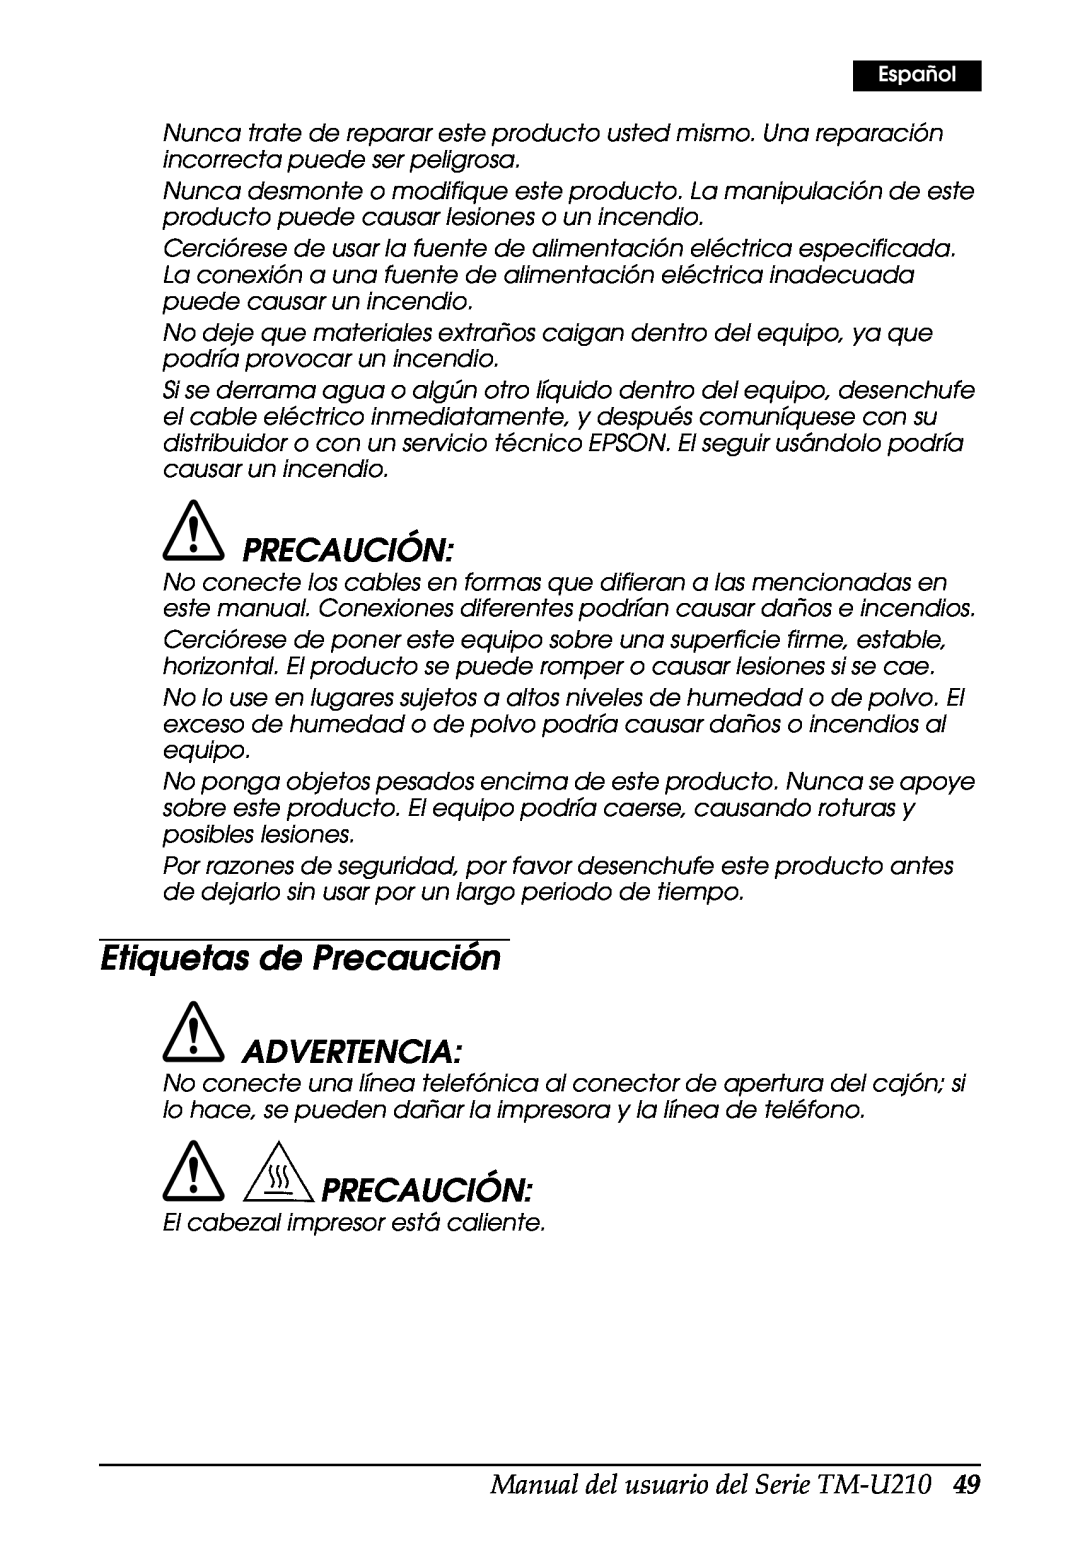 Epson M119D, M119B, M119A, TM-U210B user manual Etiquetas de Precaución, Advertencia, Manual del usuario del Serie TM-U210 